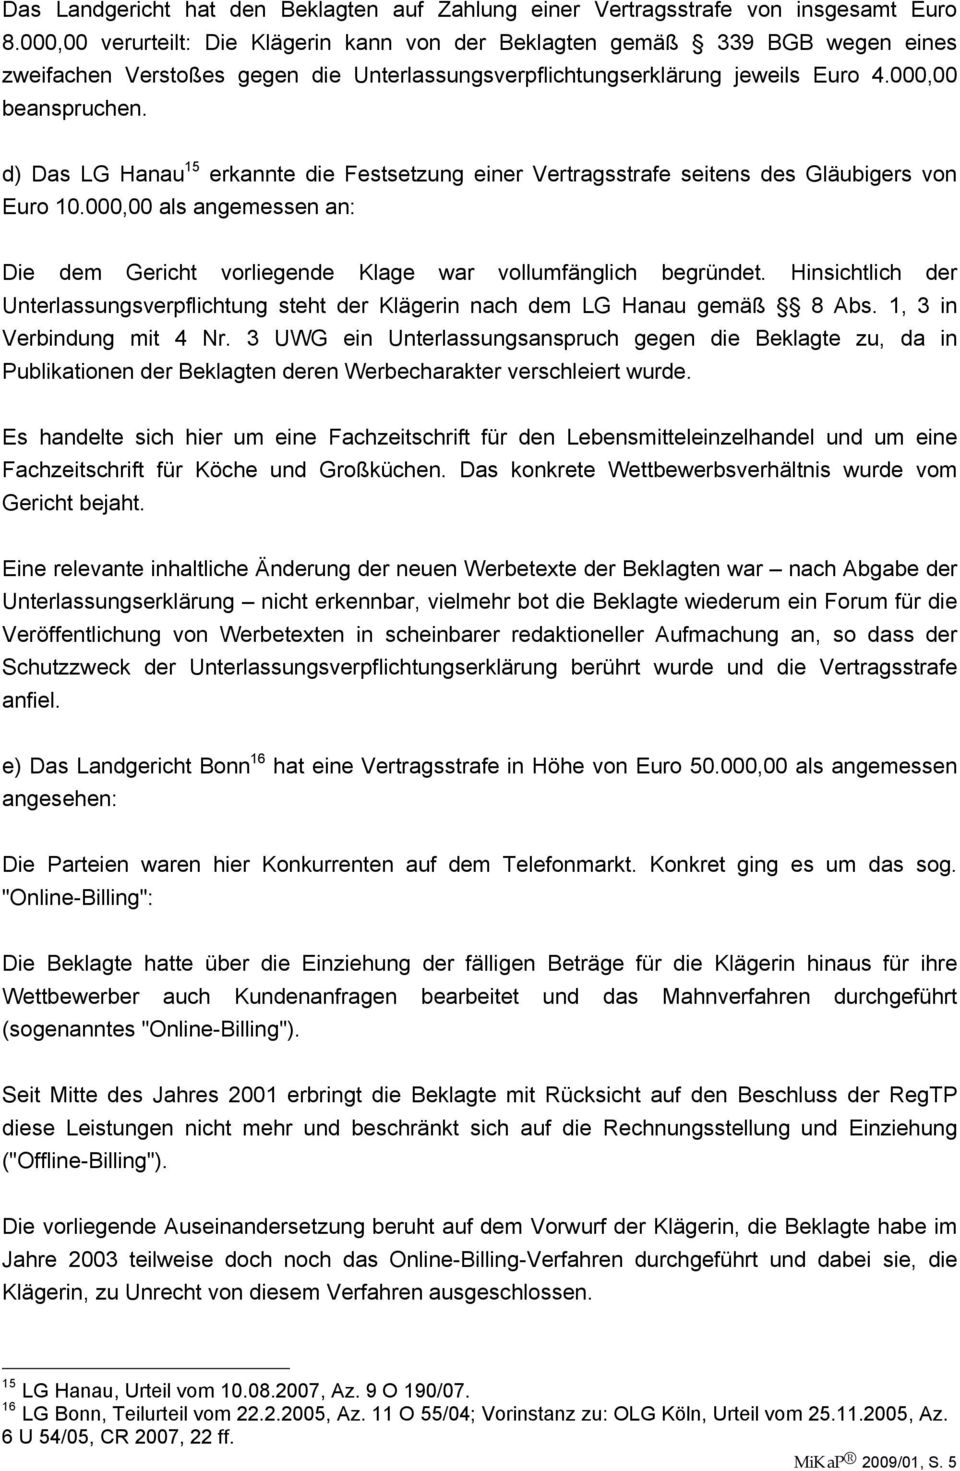 d) Das LG Hanau 15 erkannte die Festsetzung einer Vertragsstrafe seitens des Gläubigers von Euro 10.000,00 als angemessen an: Die dem Gericht vorliegende Klage war vollumfänglich begründet.